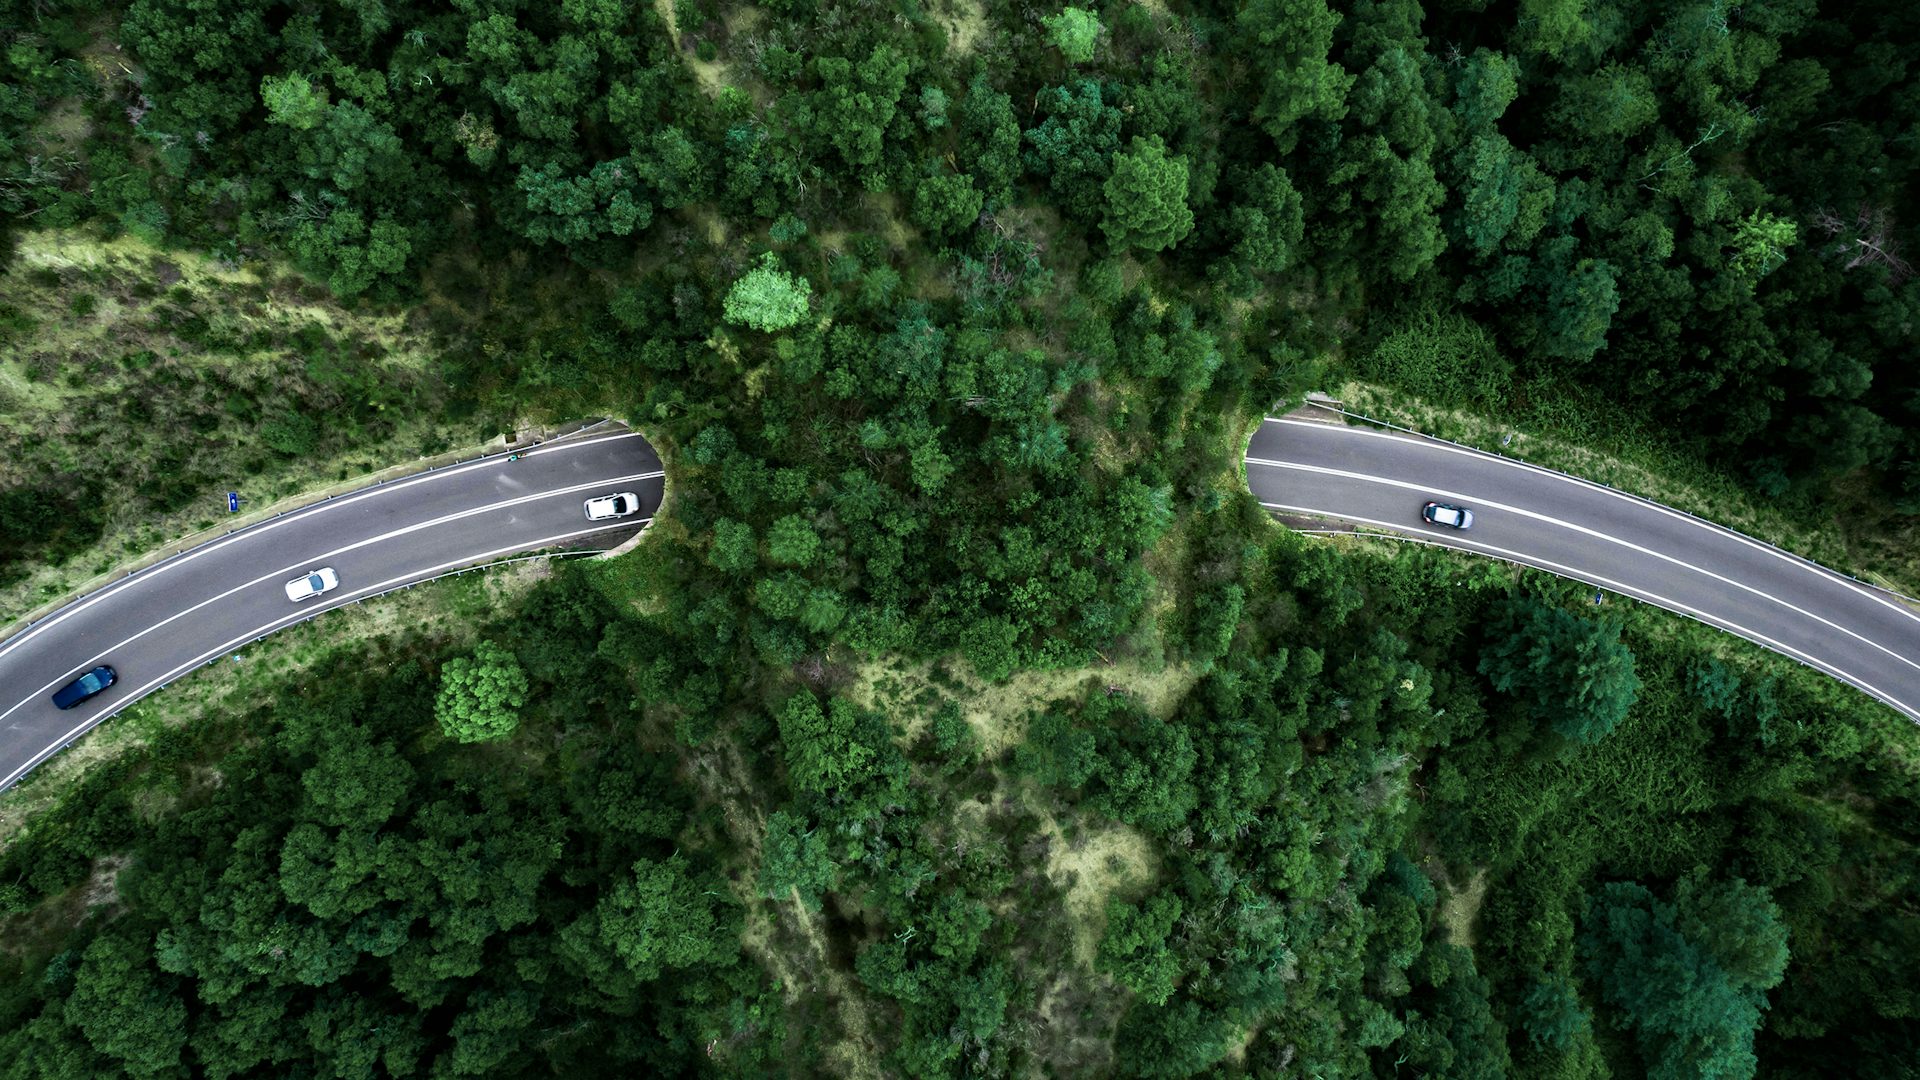 緑の自然景観の中で湾曲する道路を写した航空写真。